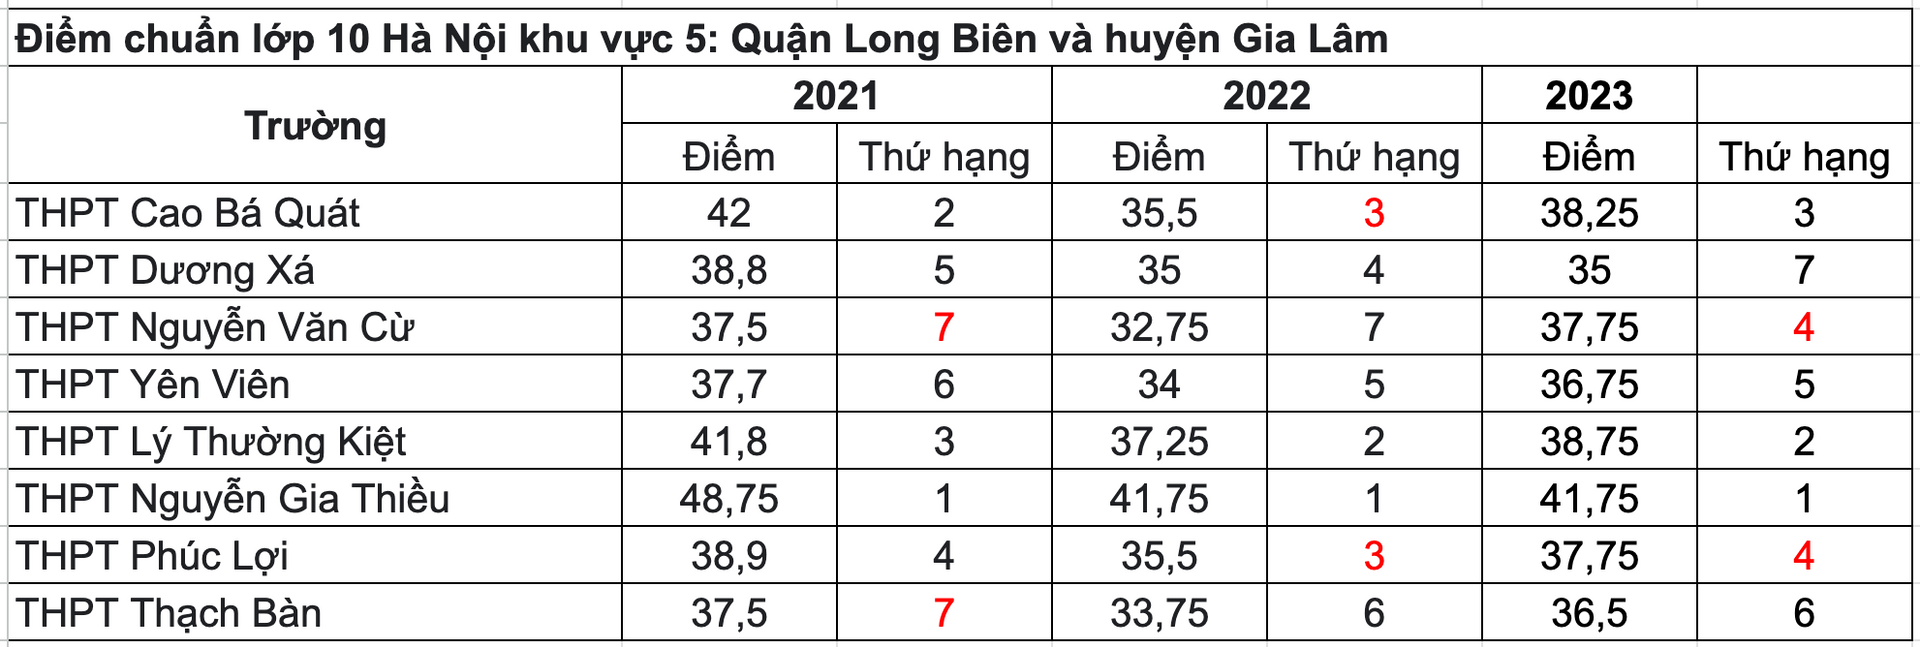 Điểm chuẩn TUYỂN SINH LỚP 10 THPT của các trường của Hà Nội 3 năm gần đây- Ảnh 8.